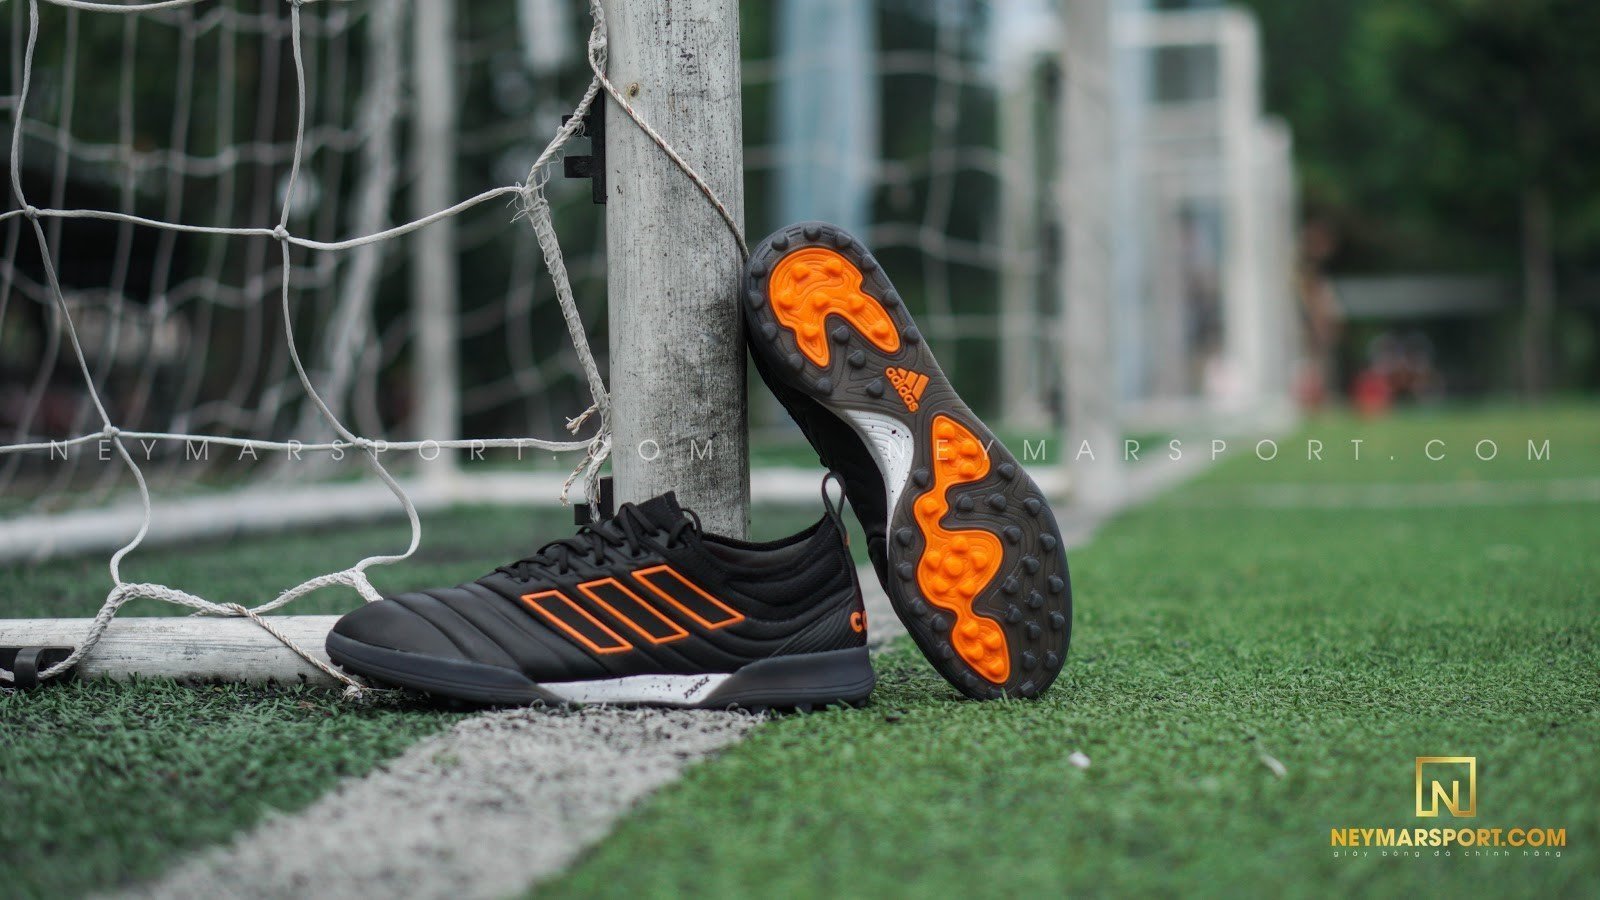 Giày đá bóng adidas Copa 20.1 TF Precision To Blur